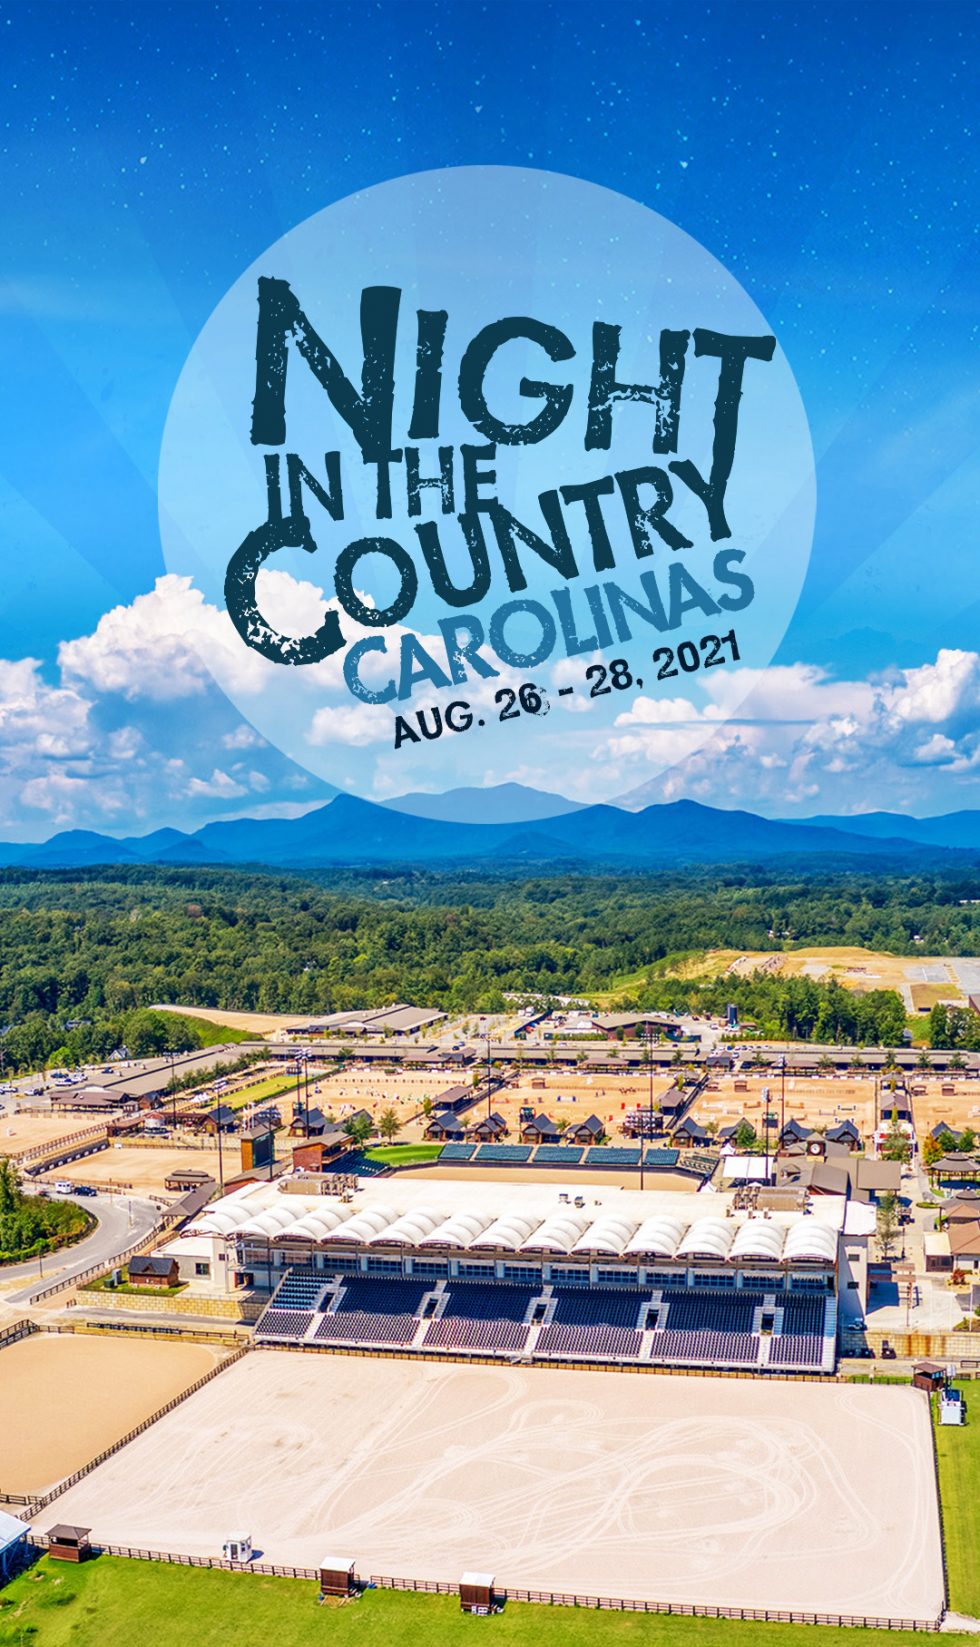 INTRODUCING NITC CAROLINAS Night in the Country Carolinas Music Festival